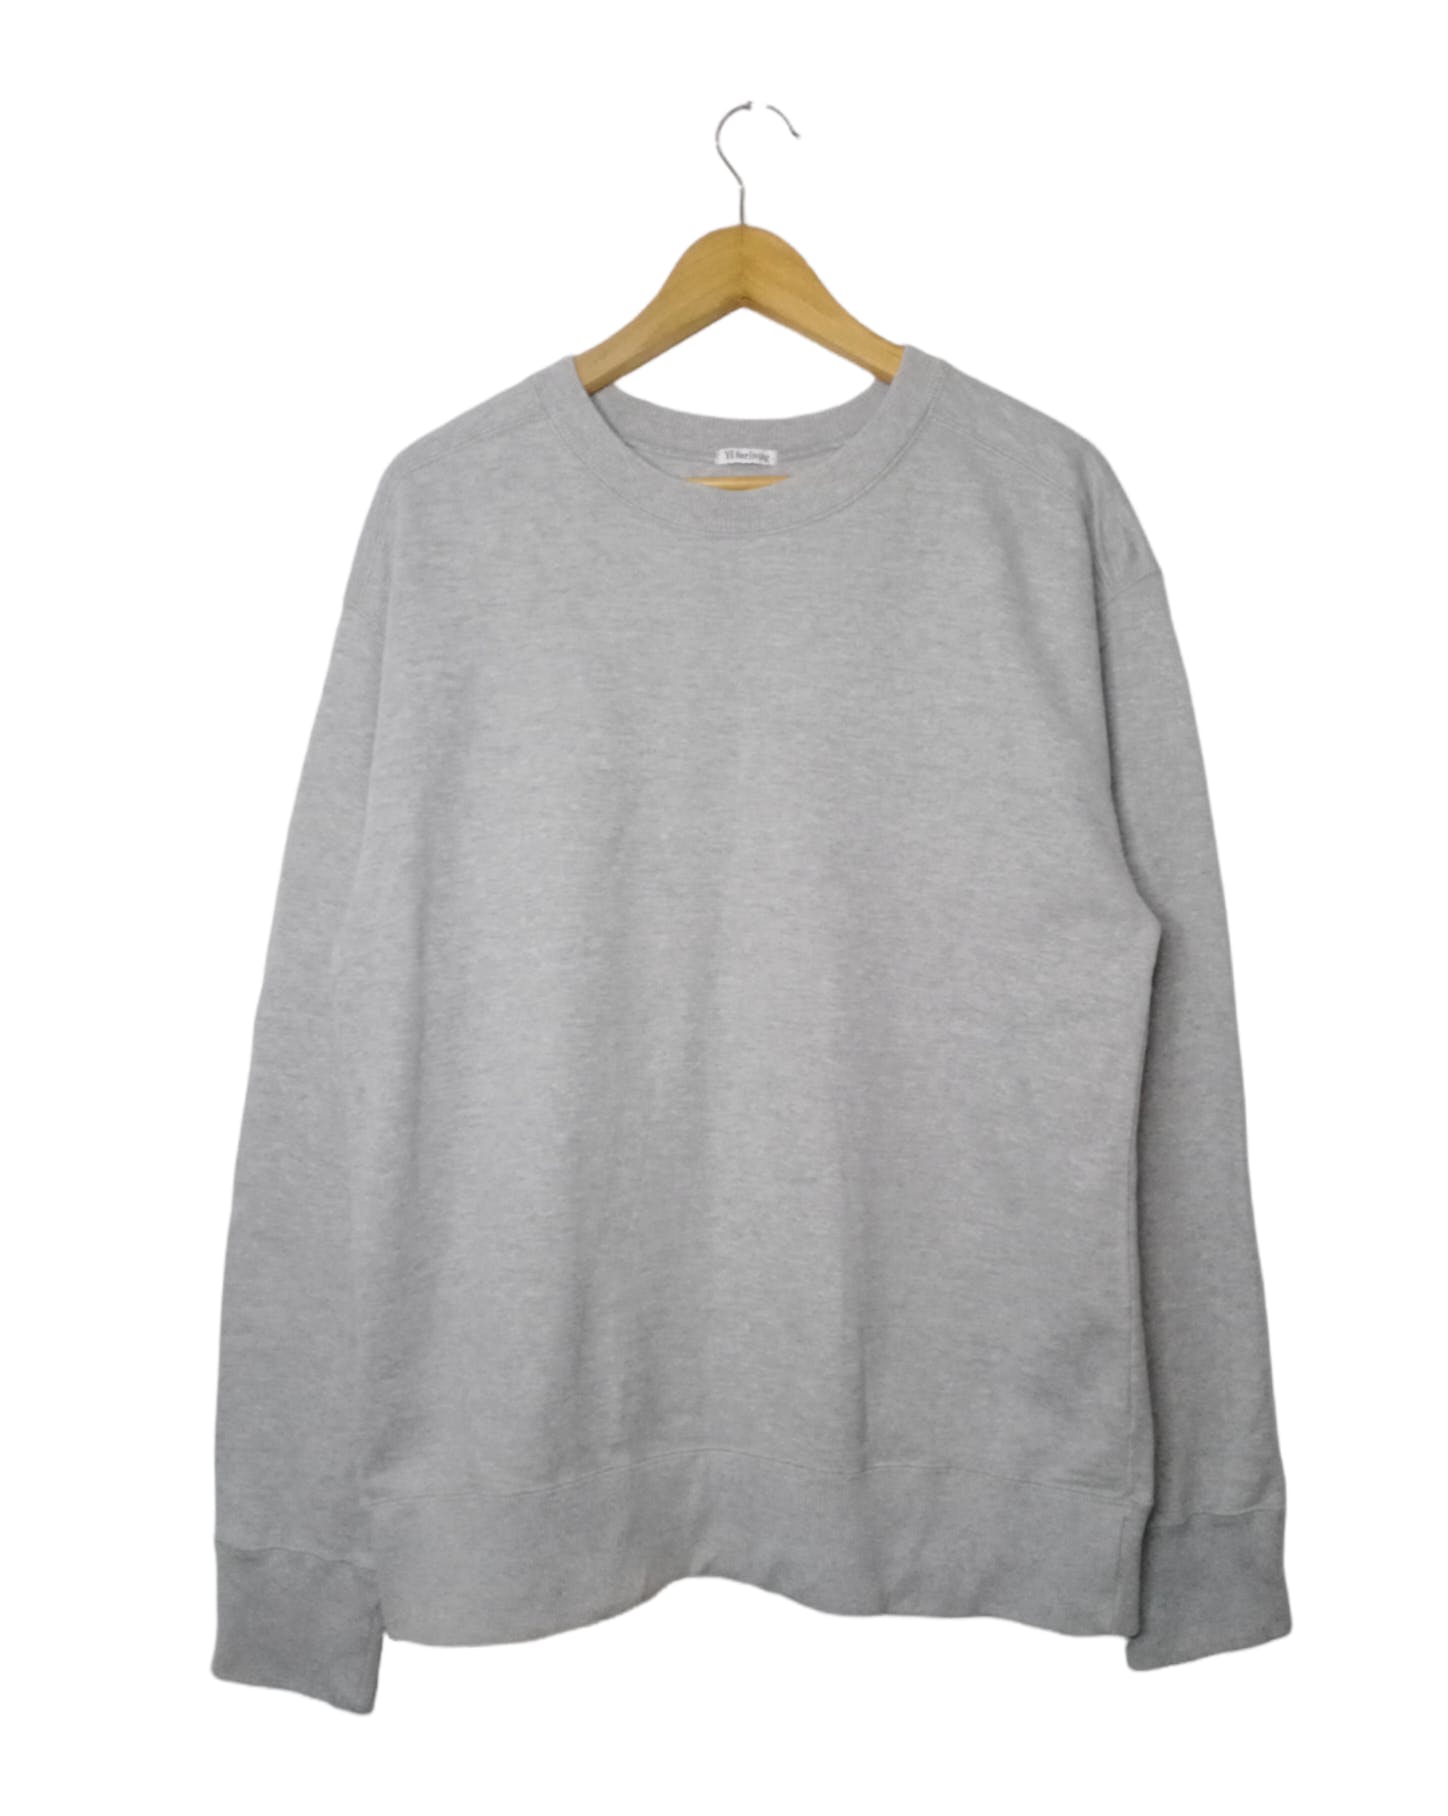 Vintage Y's For Living Yohji Yamamoto Sweatshirt - 1